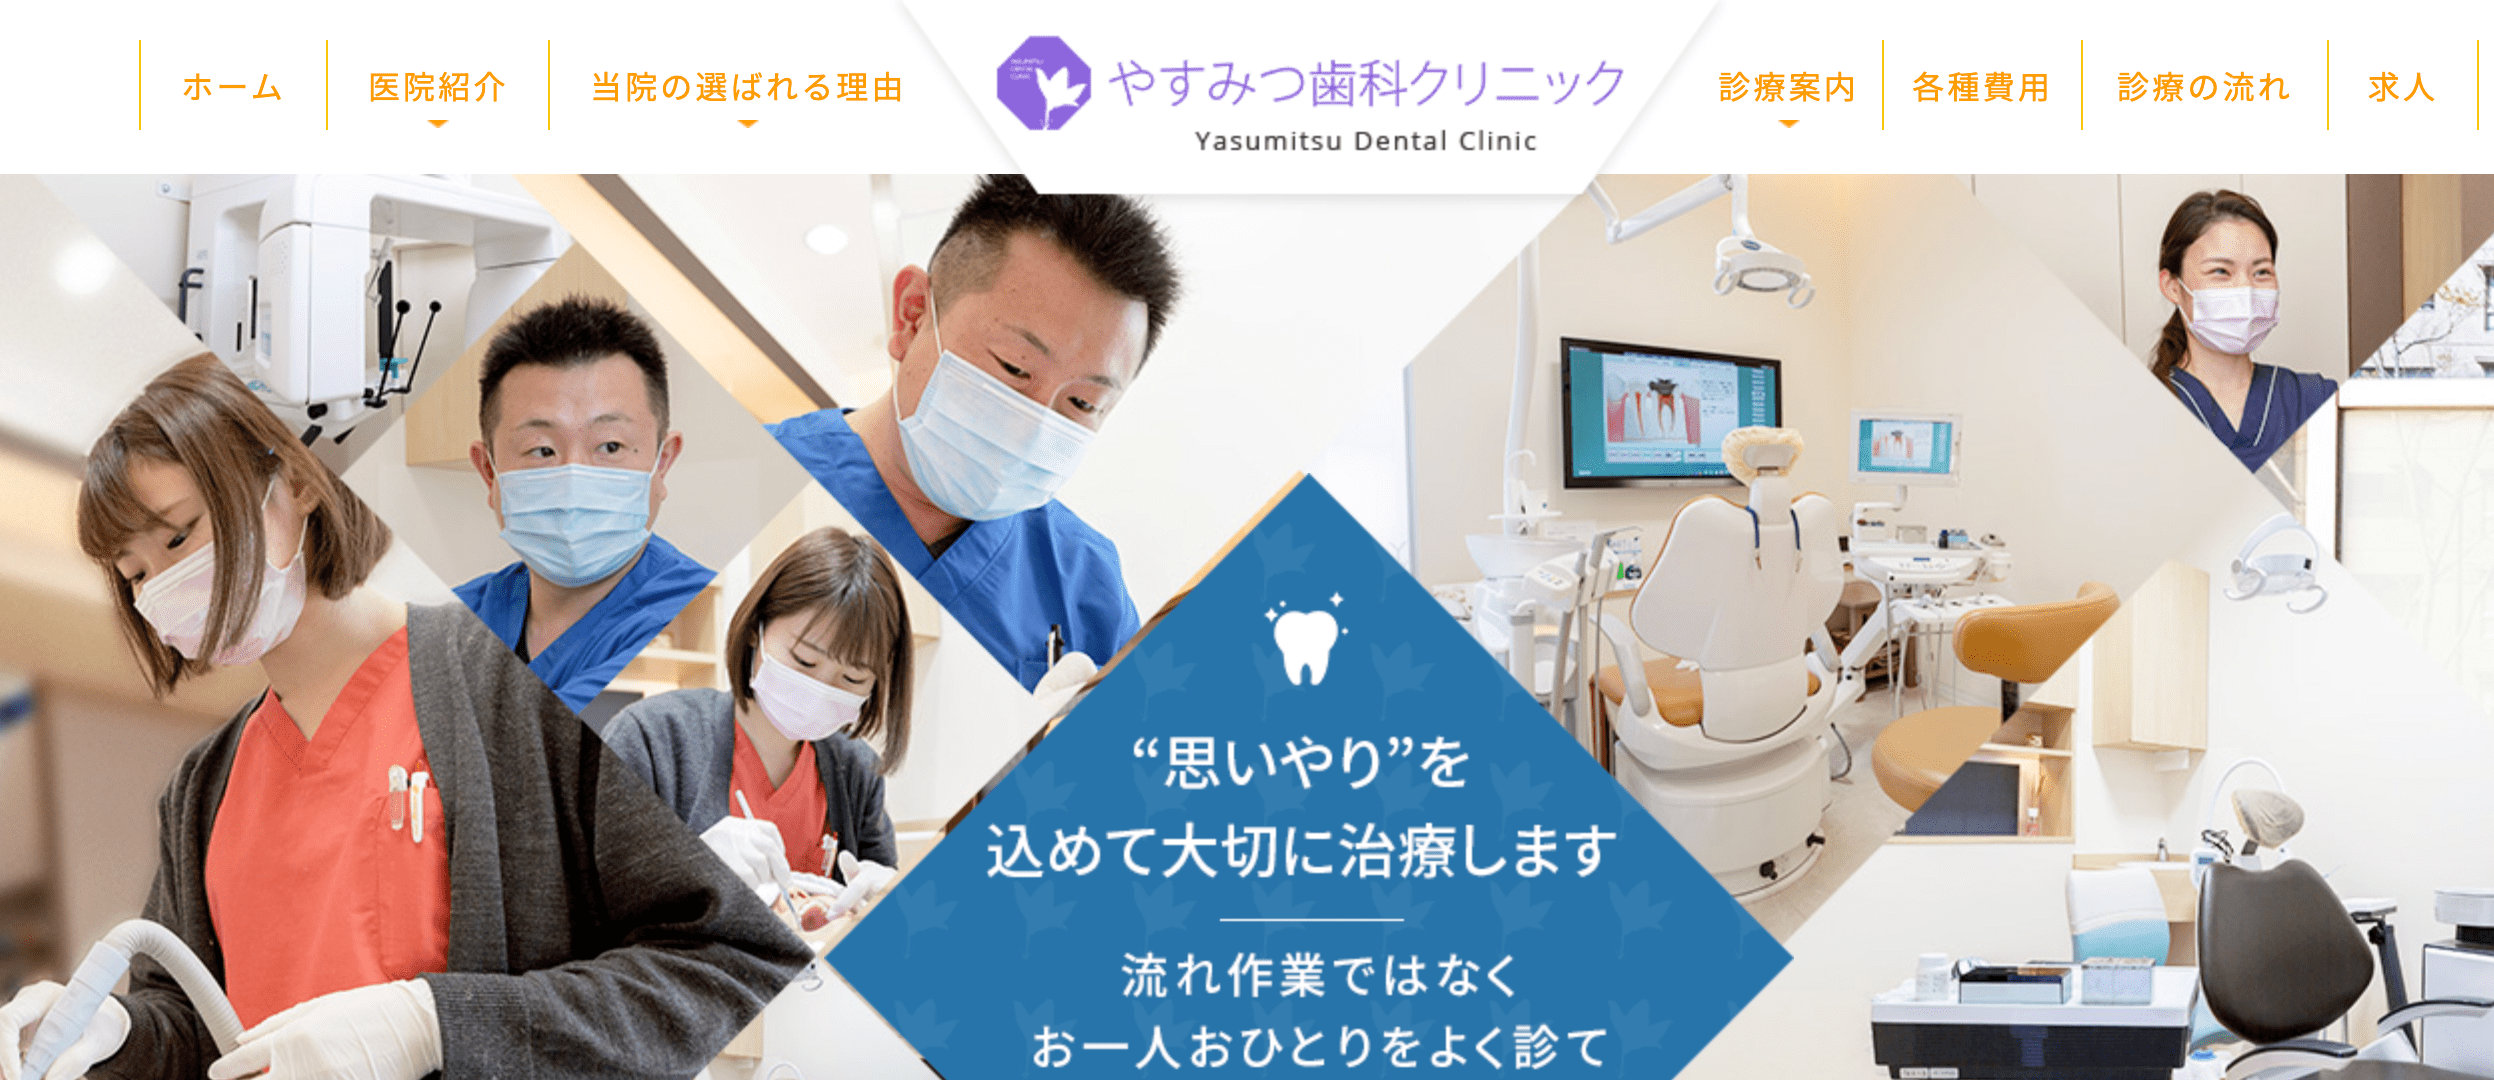 大阪市で評判のホワイトニングにおすすめの歯科クリニック10選 やすみつ歯科クリニック